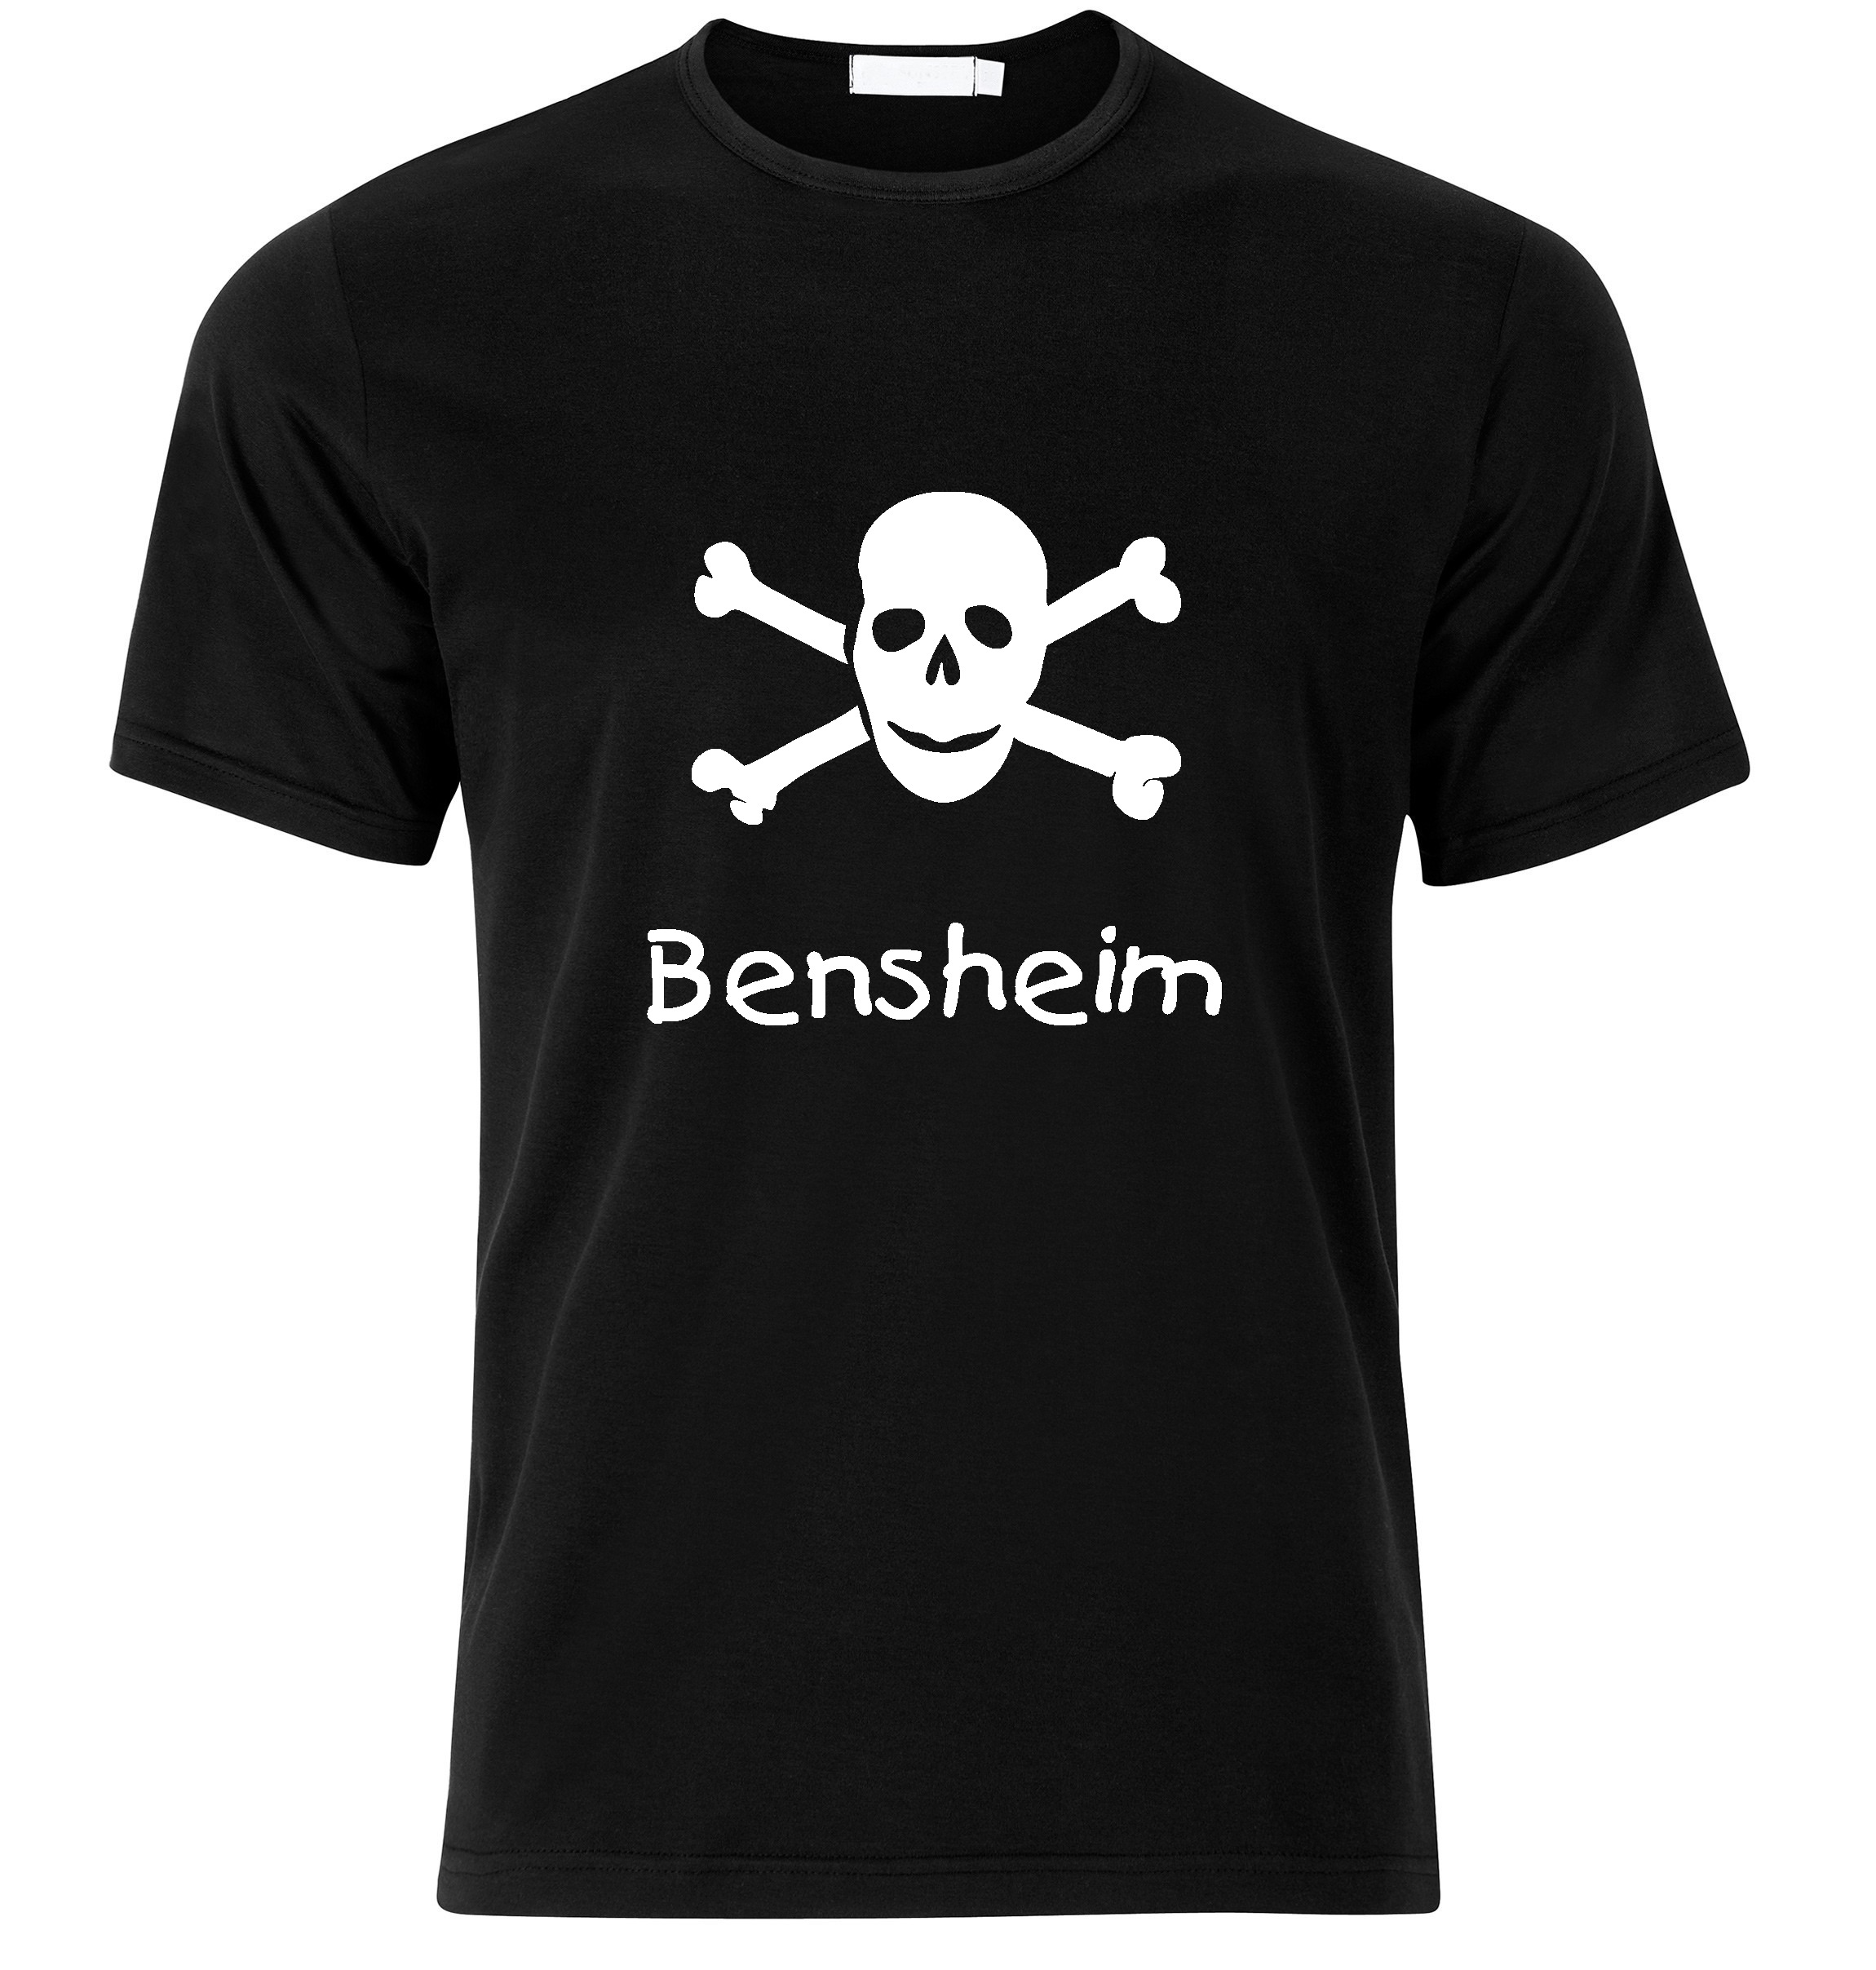 T-Shirt Bensheim Jolly Roger, Totenkopf